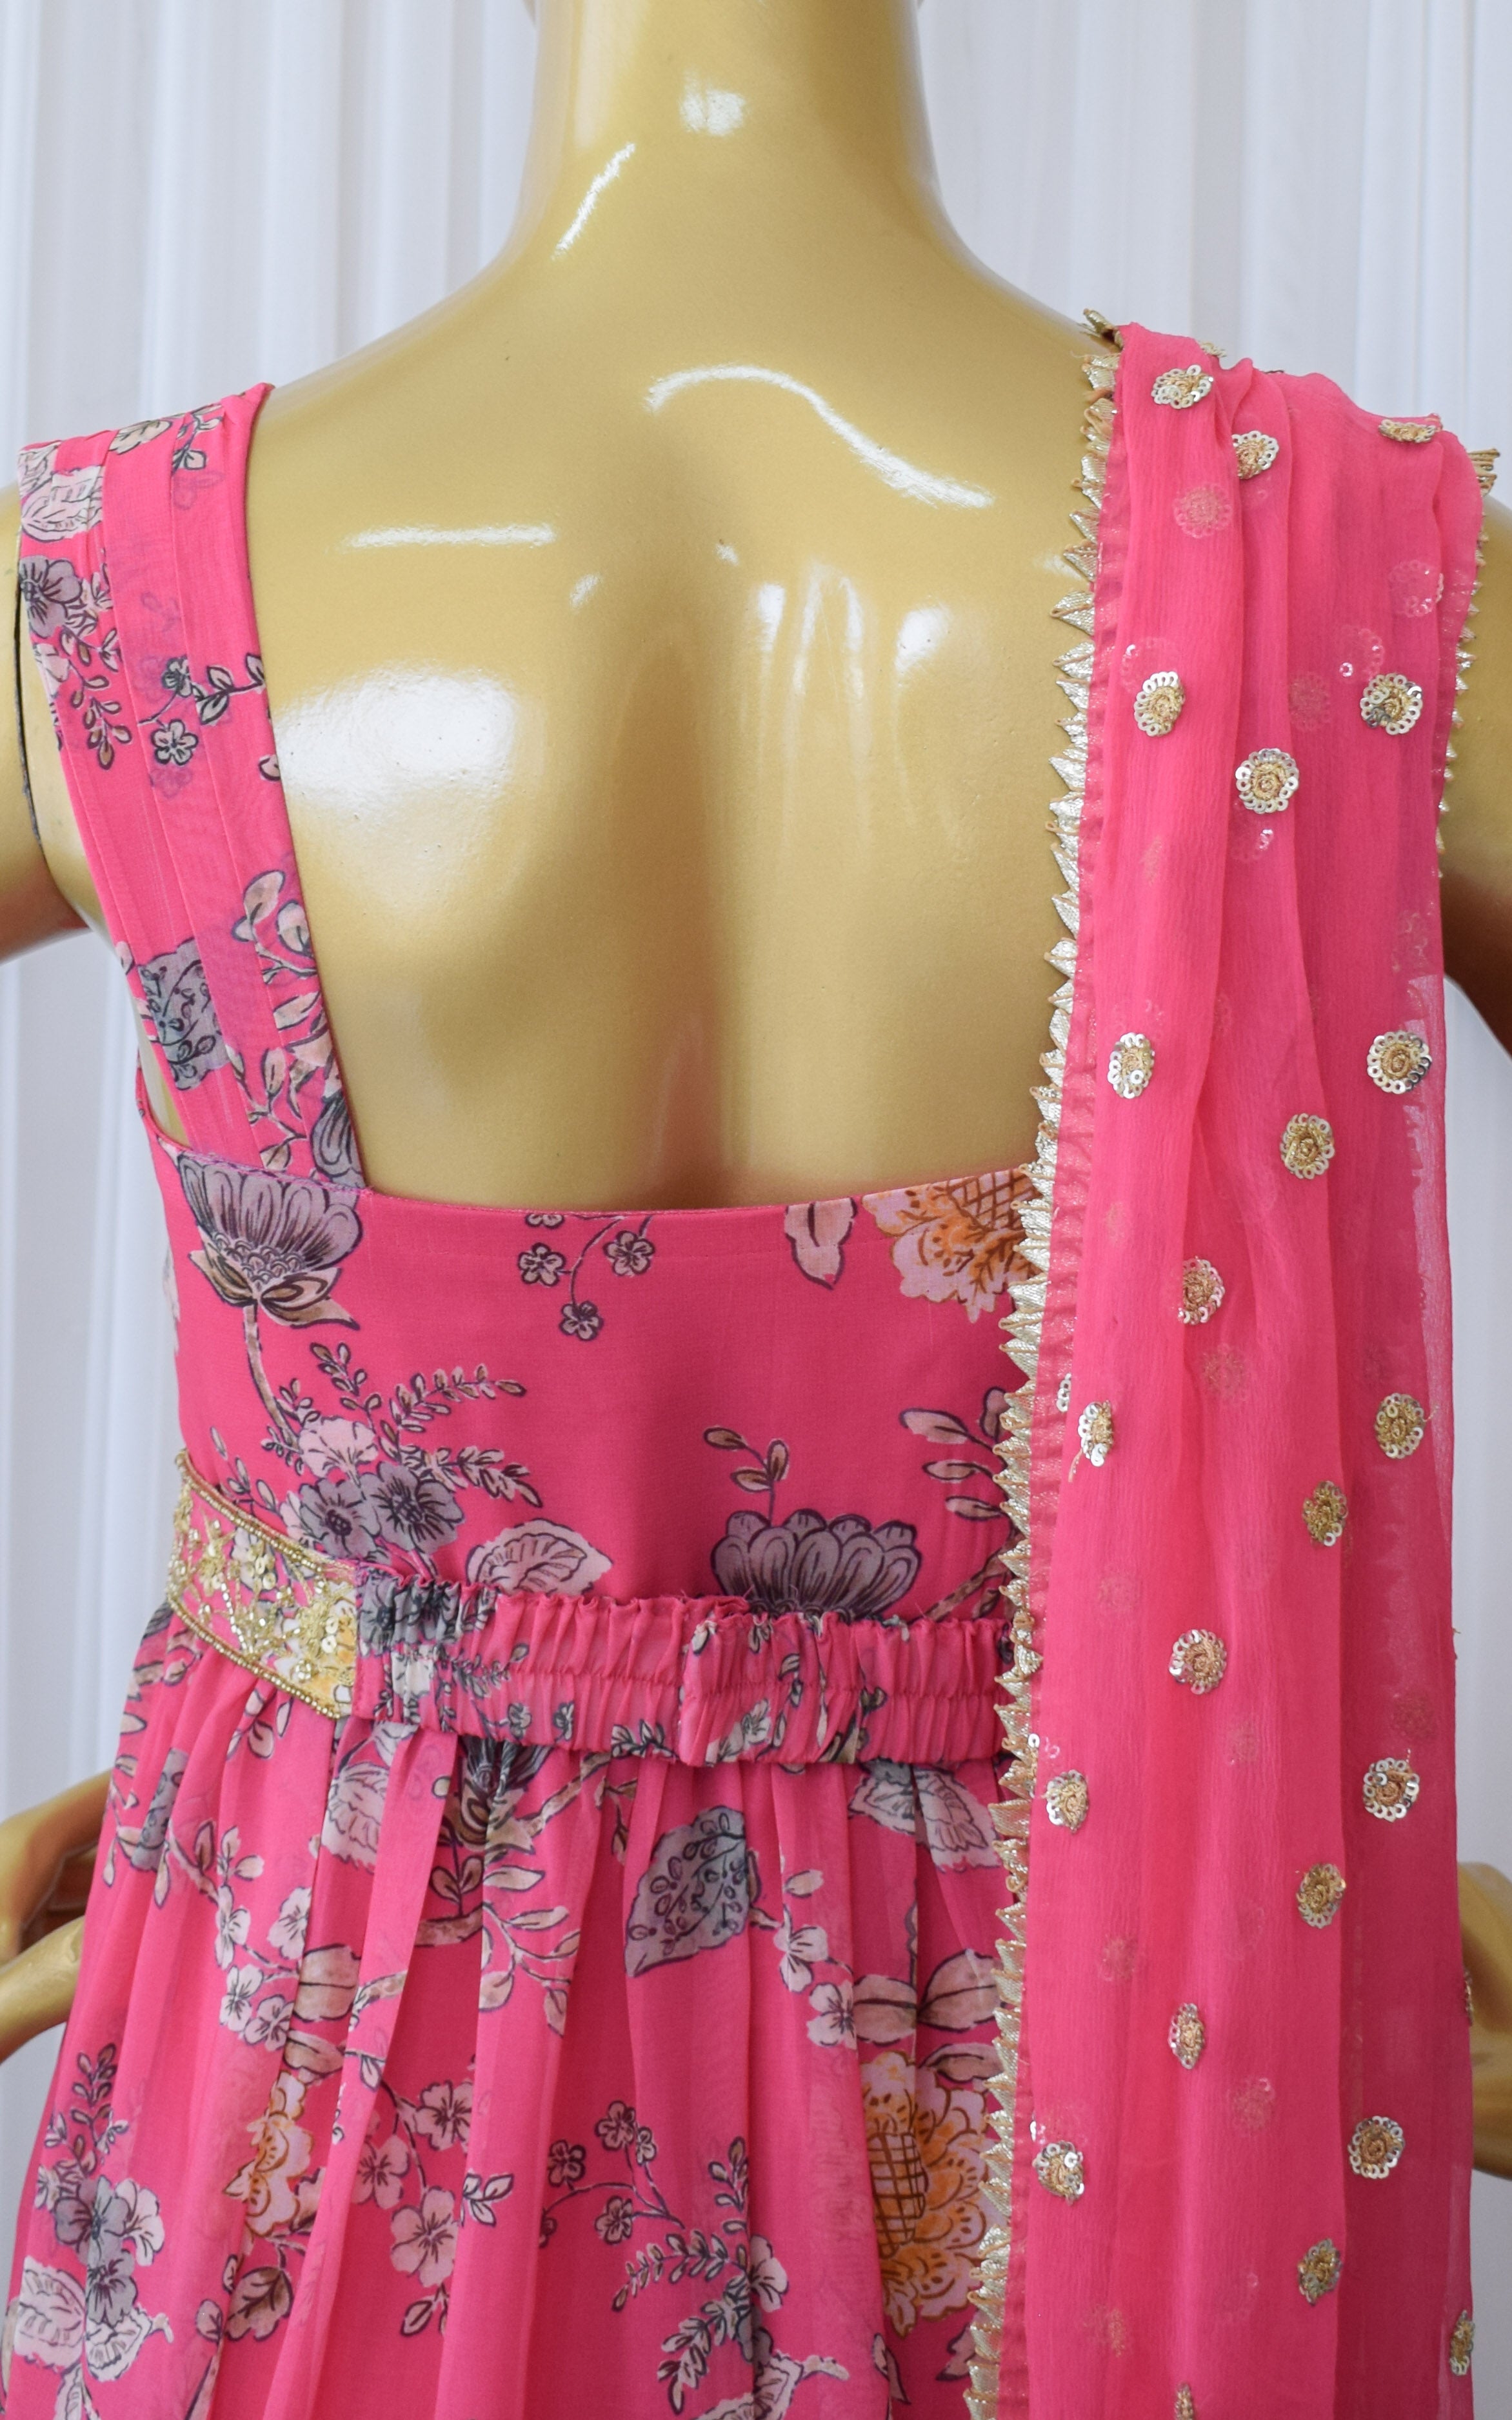 Asees Kaur Pink Floral Printed Georgette Handwork Anarkali with Embellished Belt